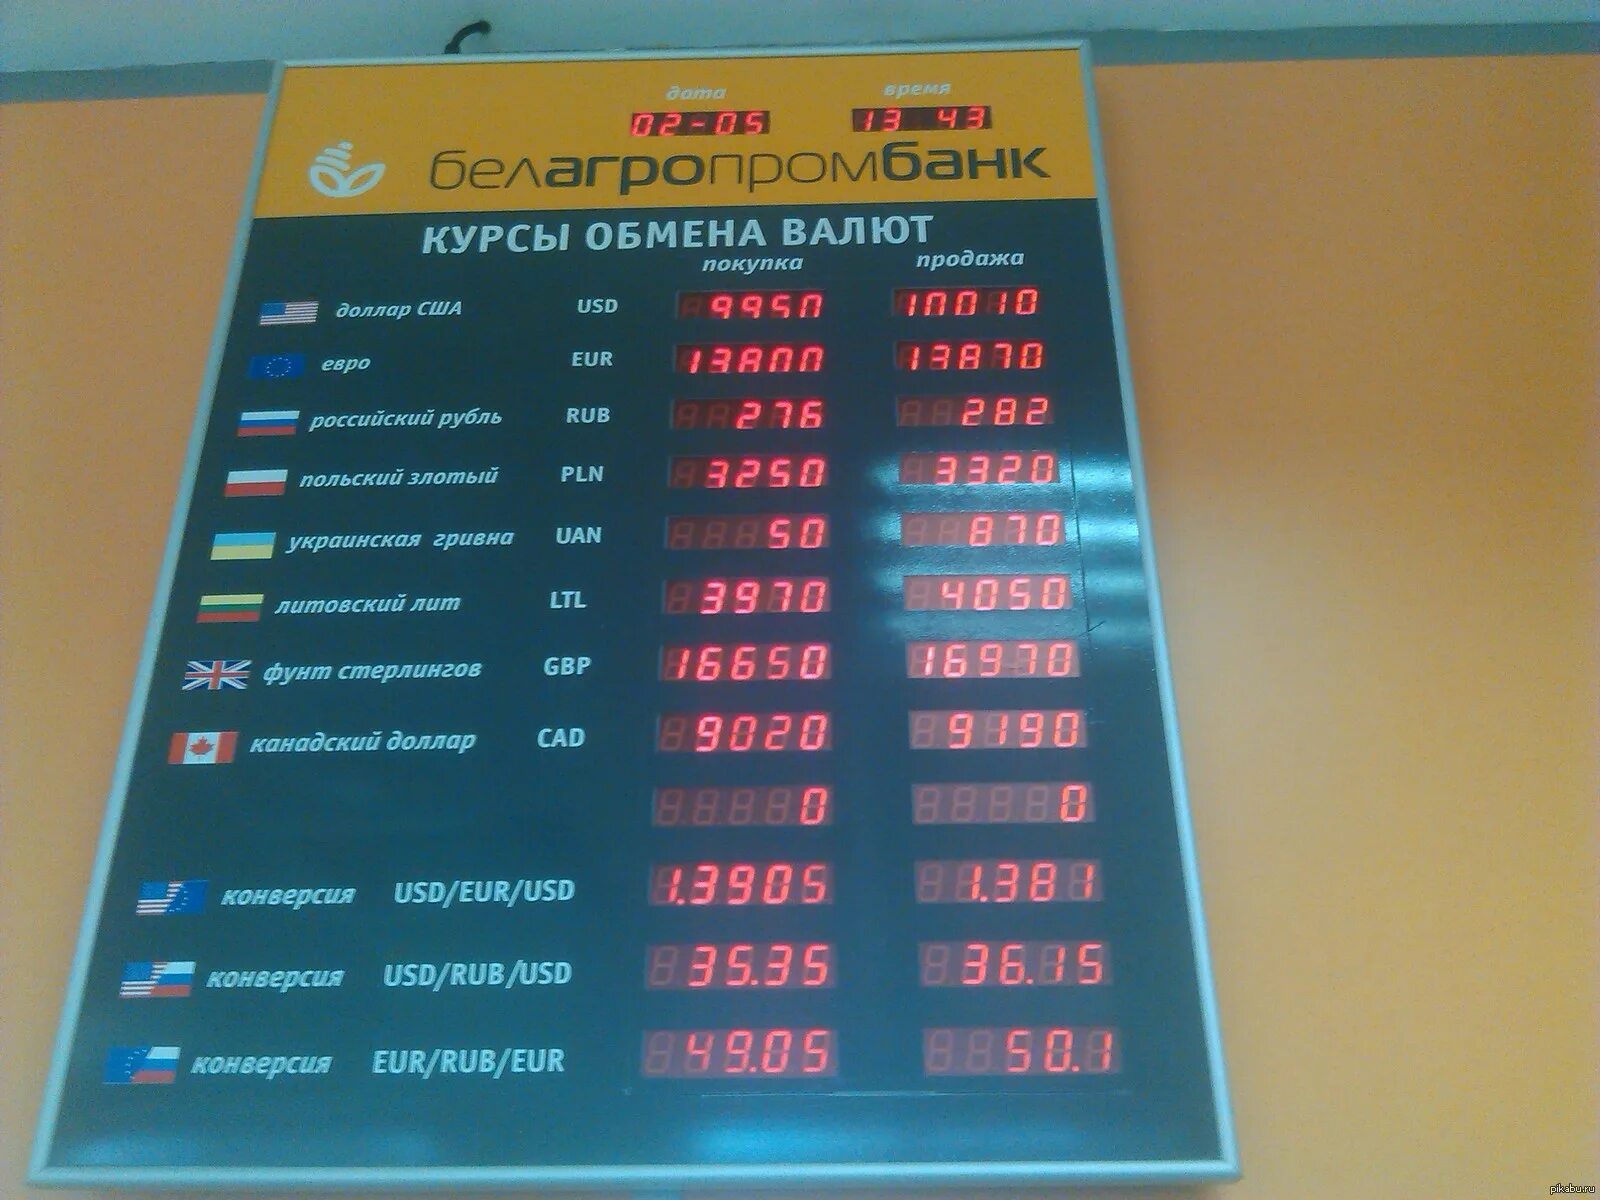 Обмен валюты покупка. Курсы валют. Курсы валют в Беларуси. Курсы валют в Белоруссии. Курсы валют на сегодня.